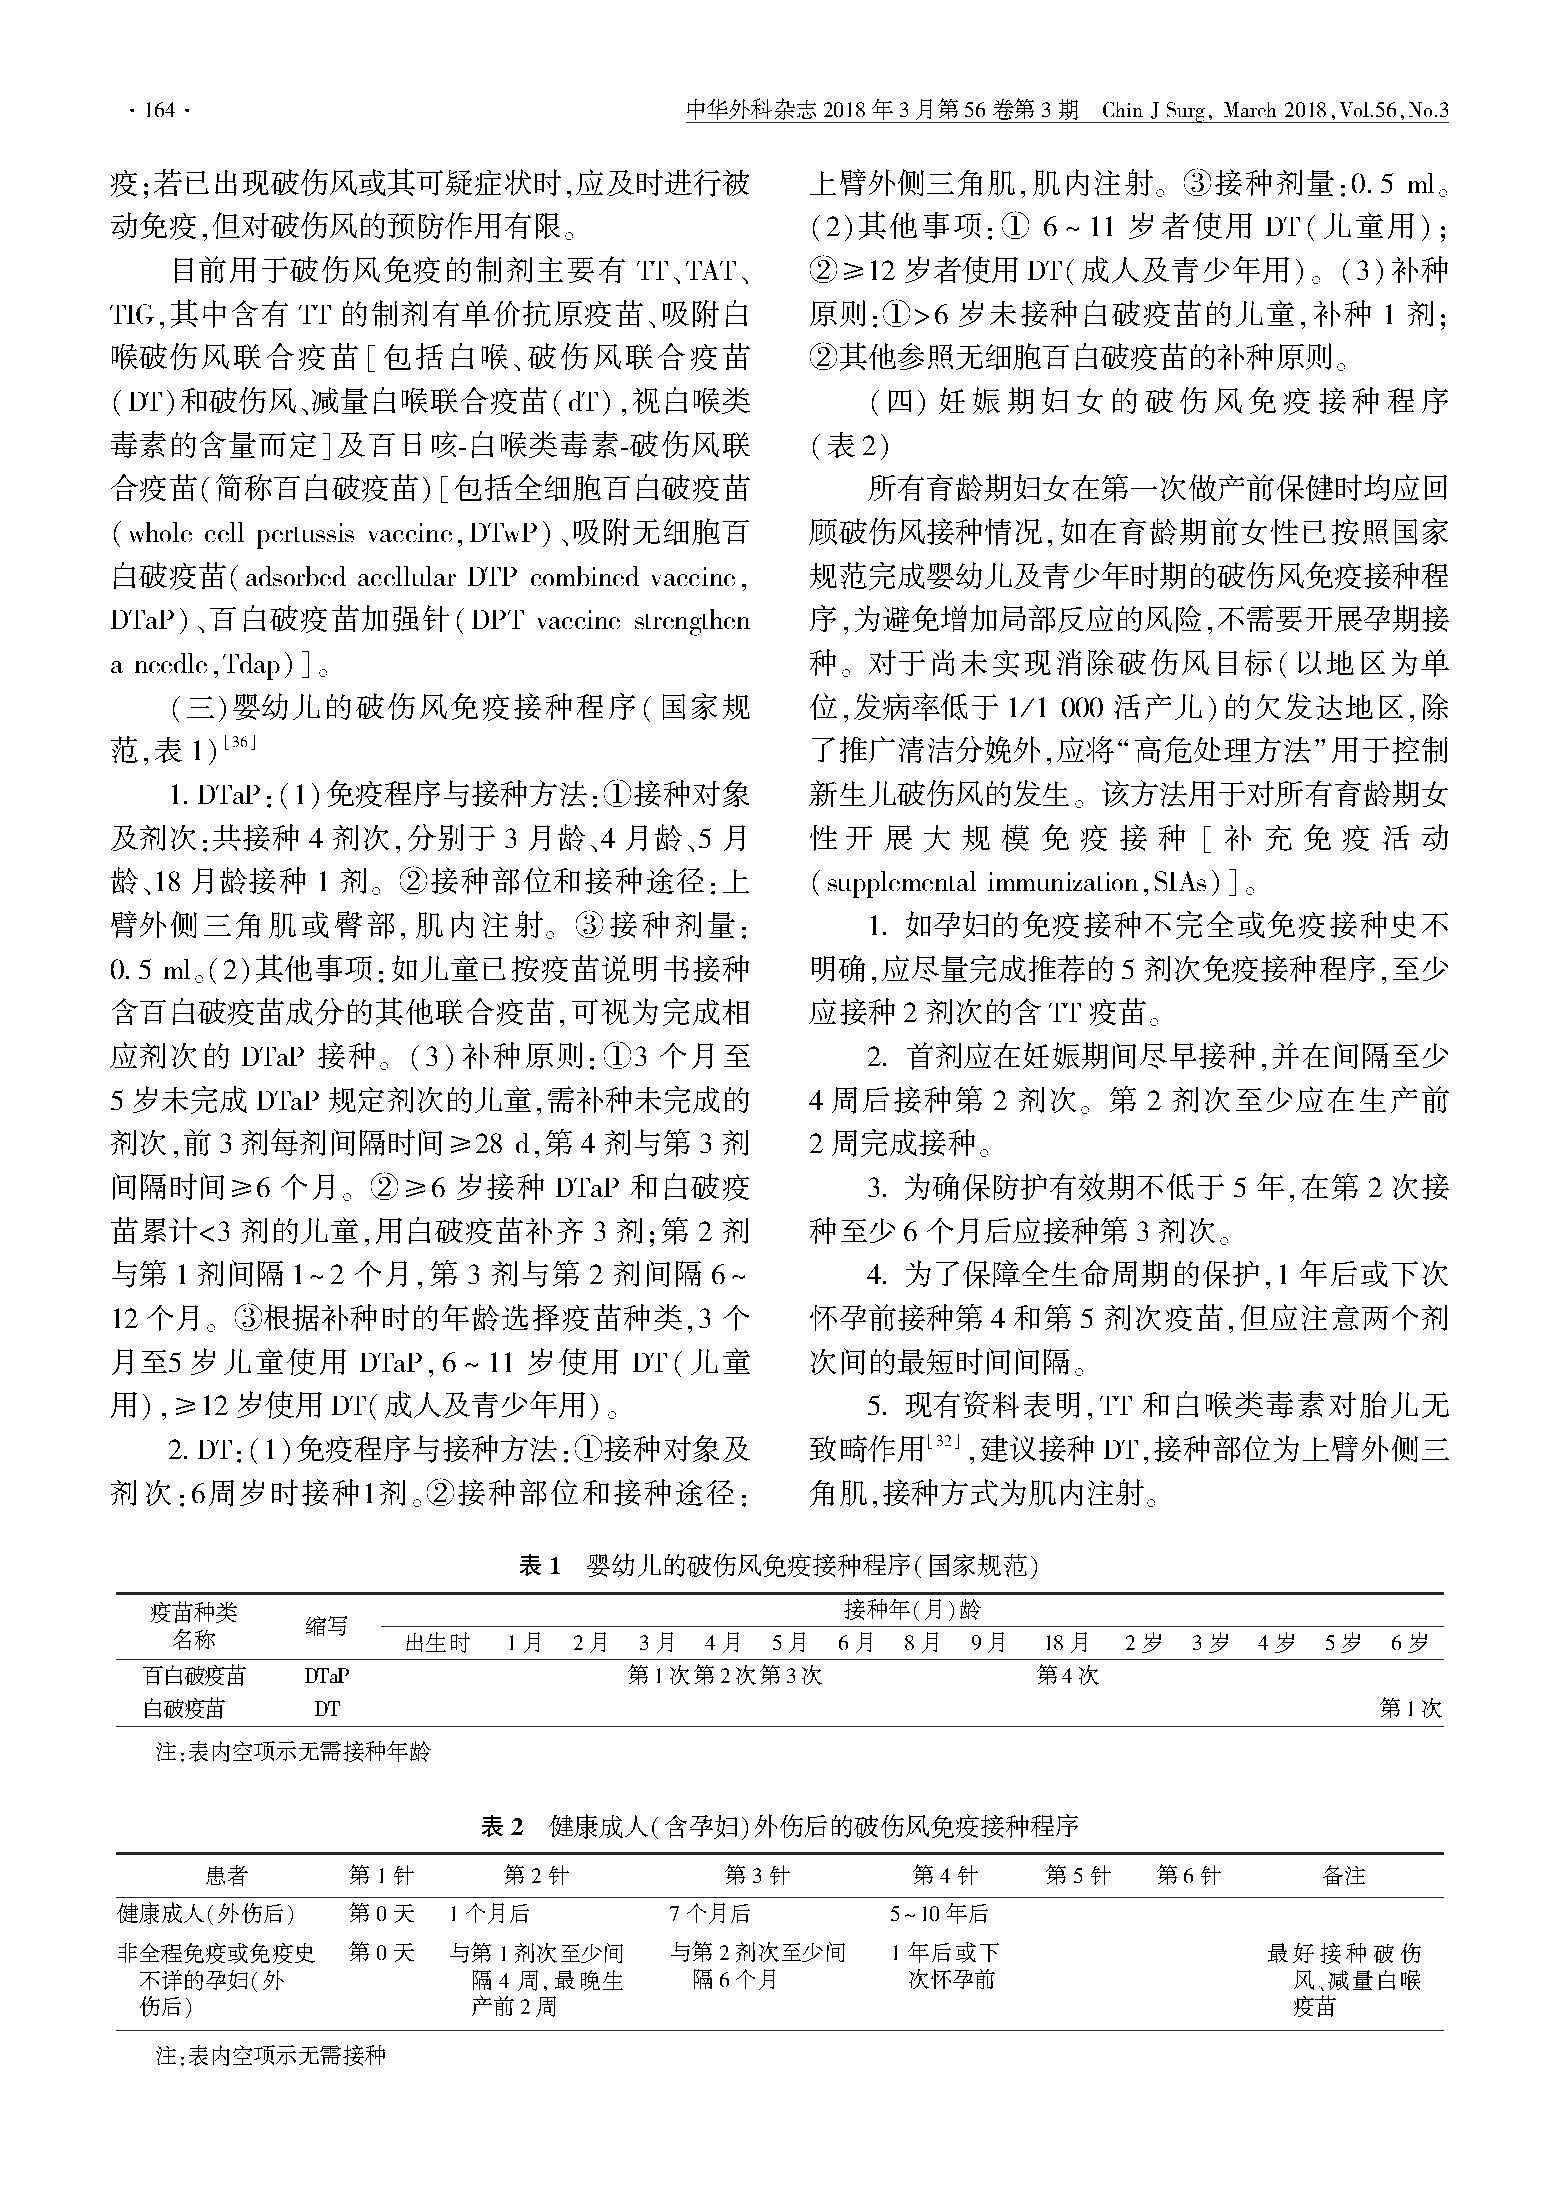 中国破伤风免疫预防专家共识_页面_4